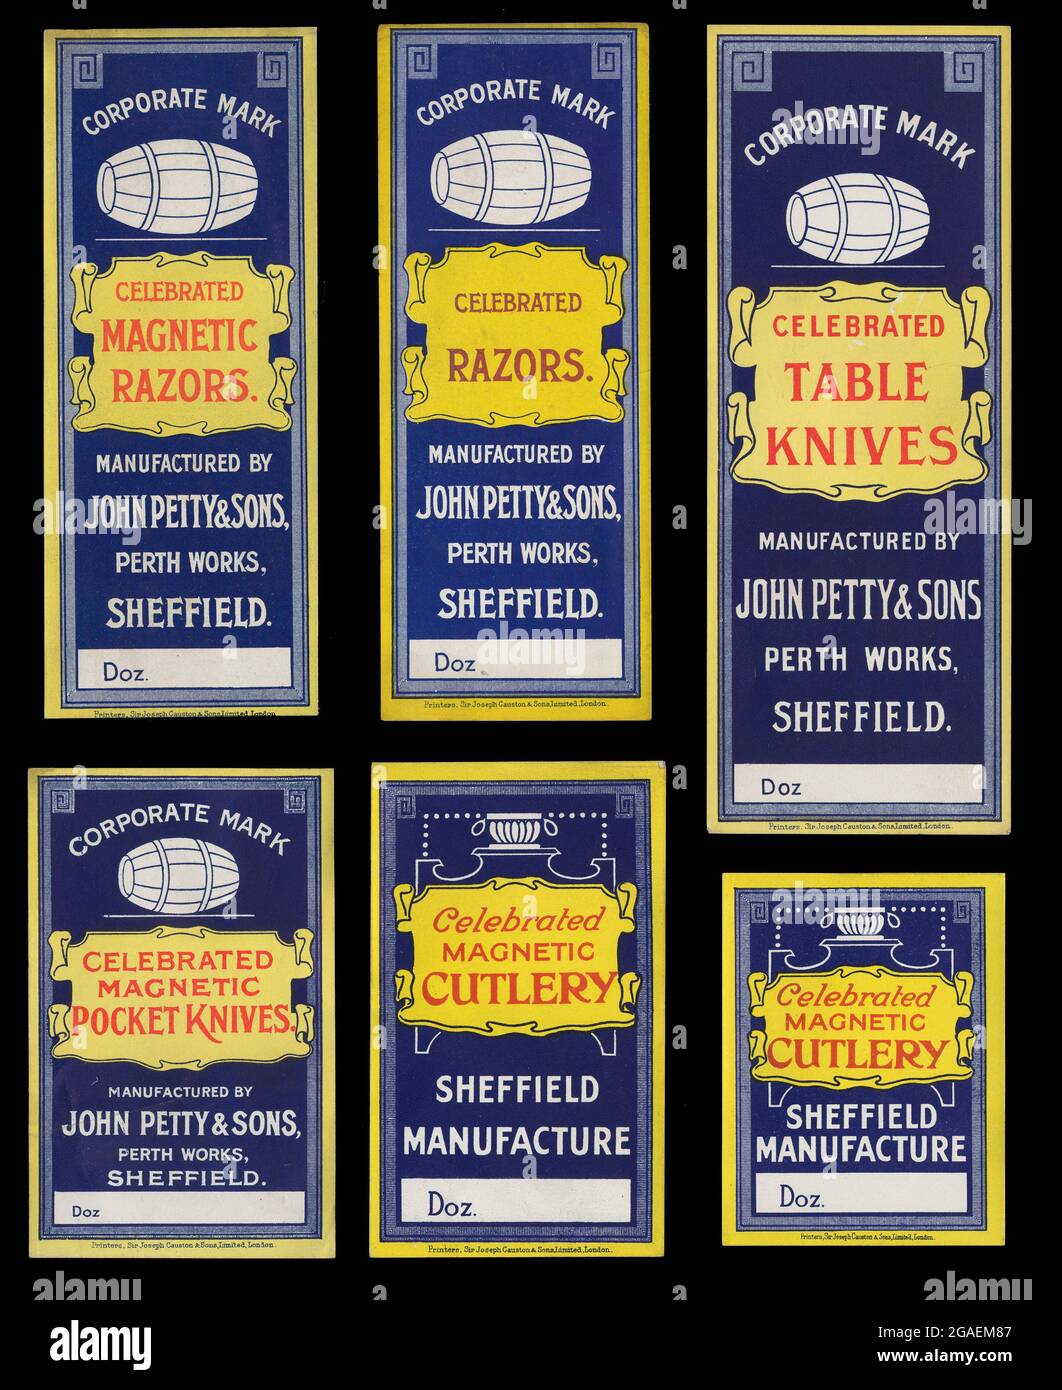 John Petty and Sons, Perth Works, Garden Street, Sheffield. Unbenutzte Verpackungsetiketten für Kartons mit Magnetrasierern, magnetischen Taschenmessern, Rasierern, Besteck, gefeierten Tischmessern. Entwürfe um 1900, diese wurden wahrscheinlich in den 1920er Jahren gedruckt. Stockfoto